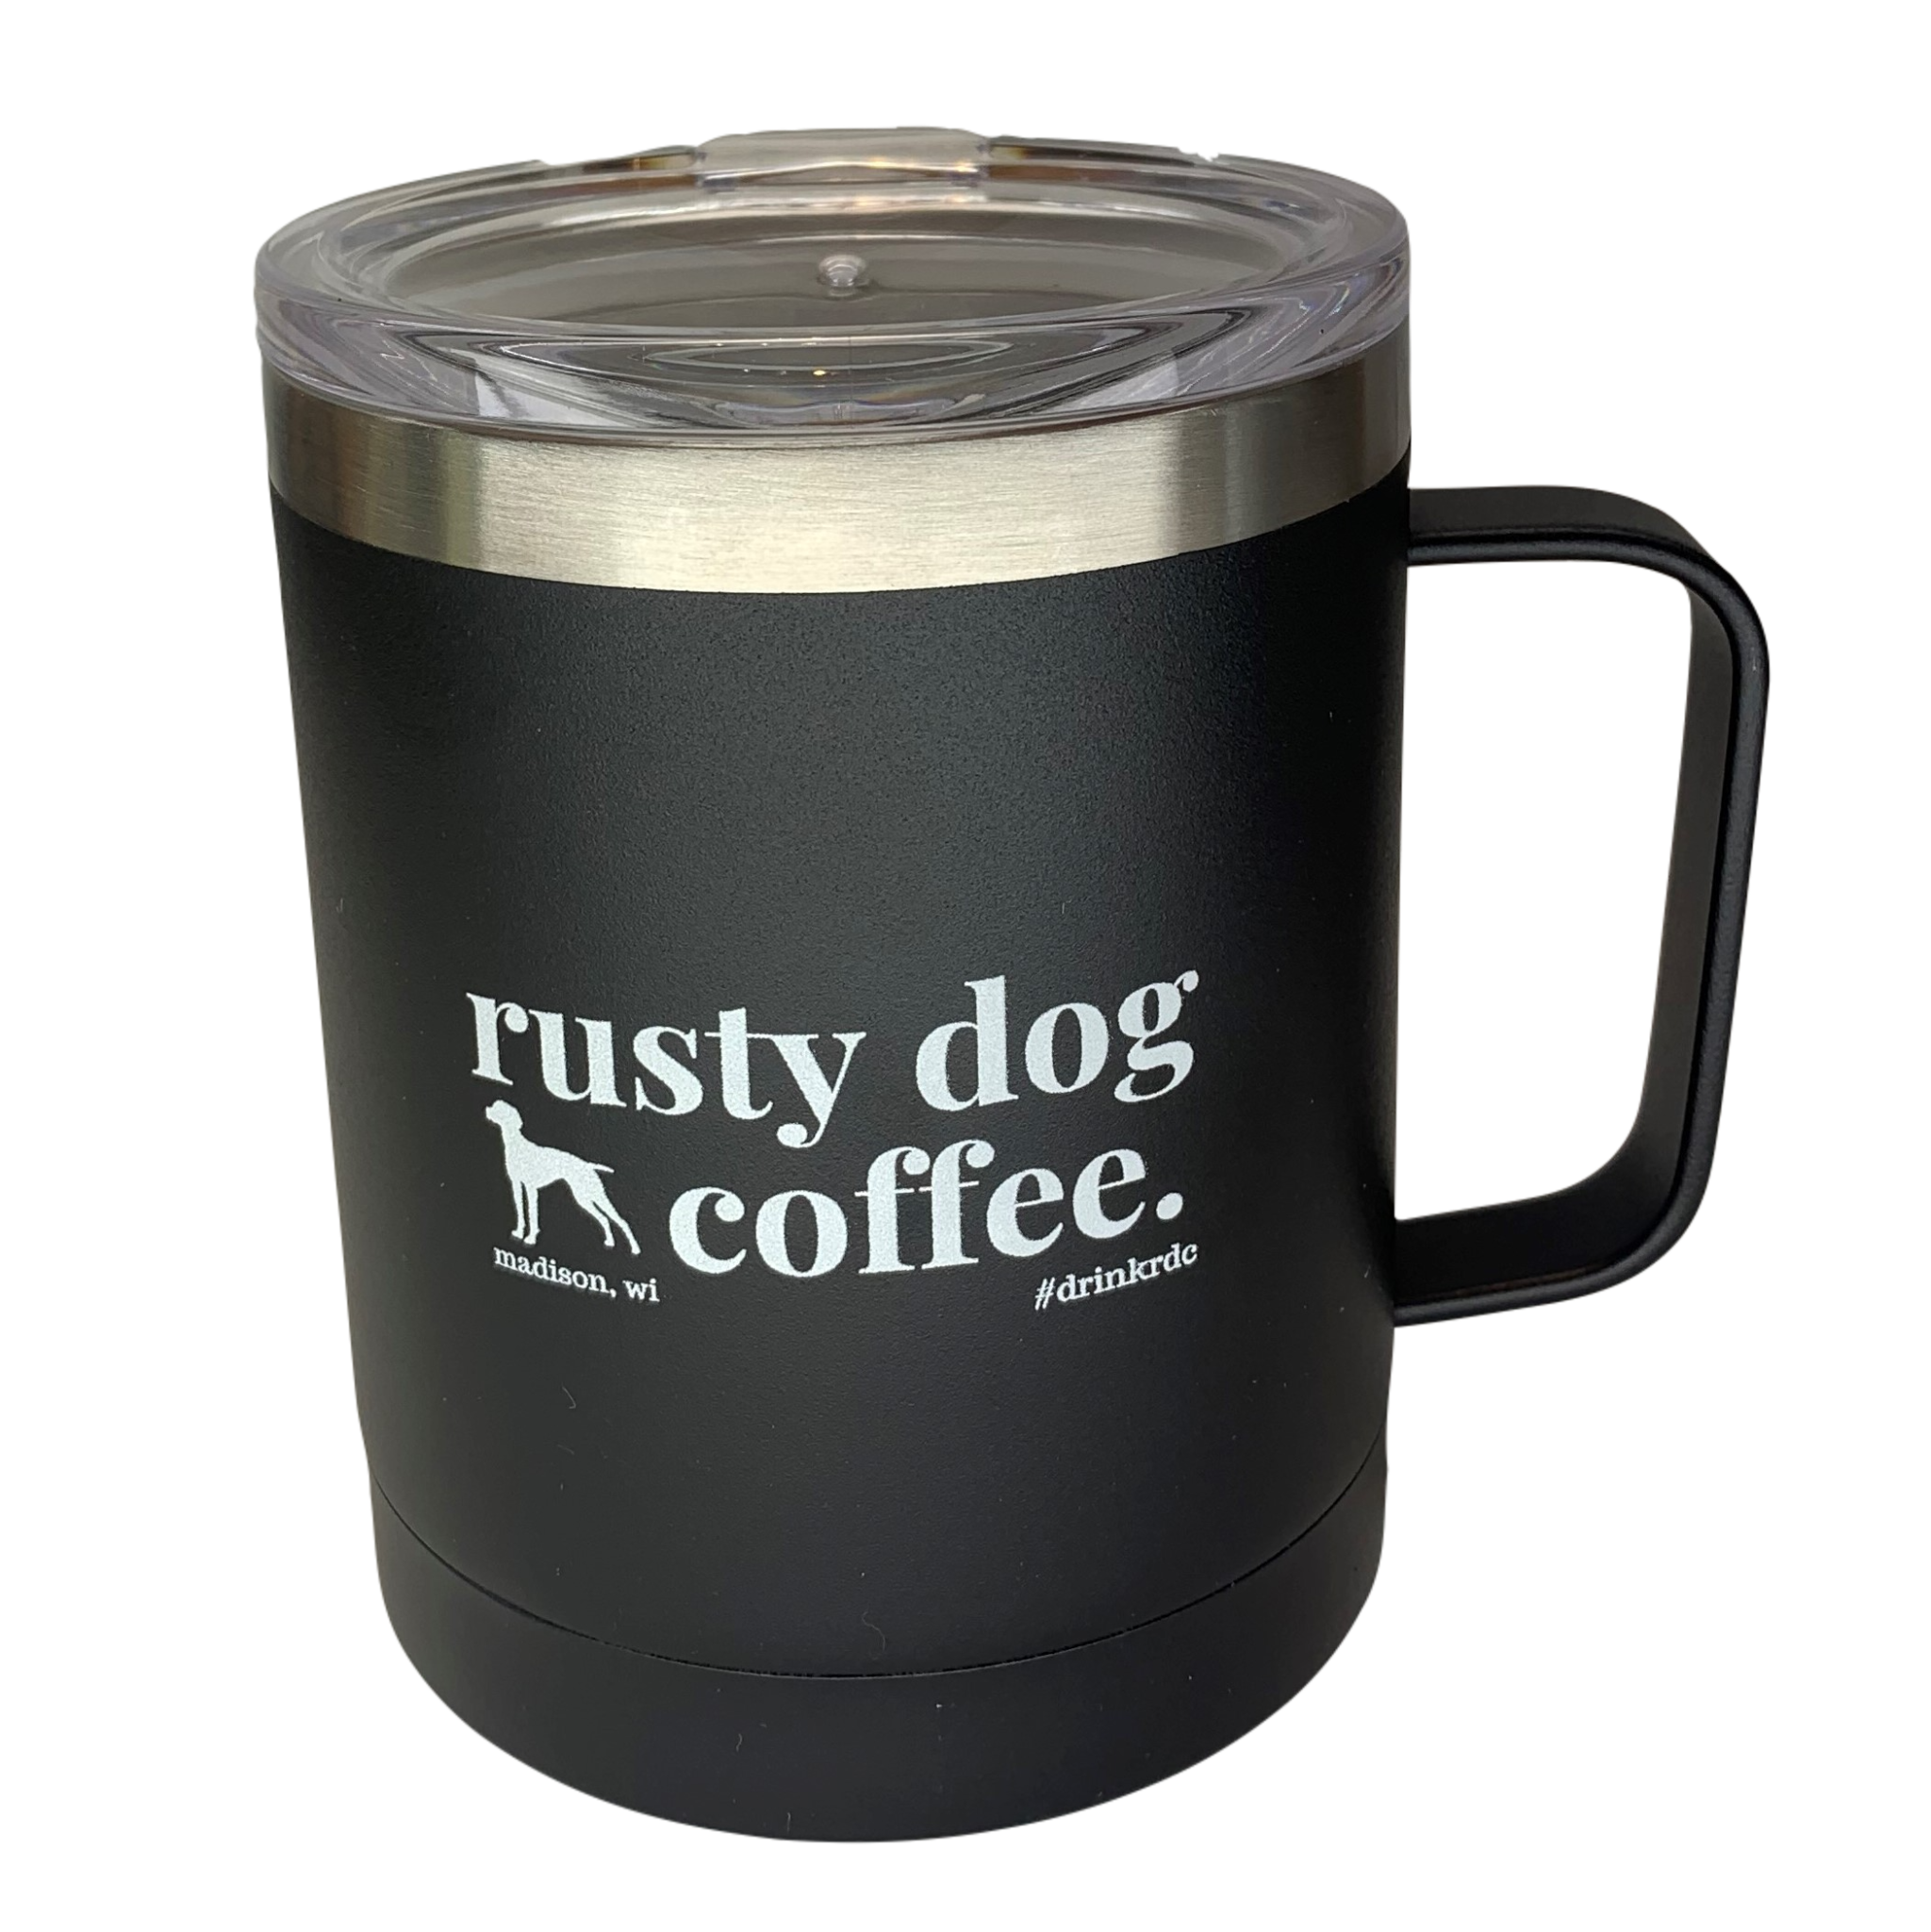 http://www.rustydogcoffee.com/cdn/shop/products/madison-wi-coffee-roaster-travel-mug-black.png?v=1618451747